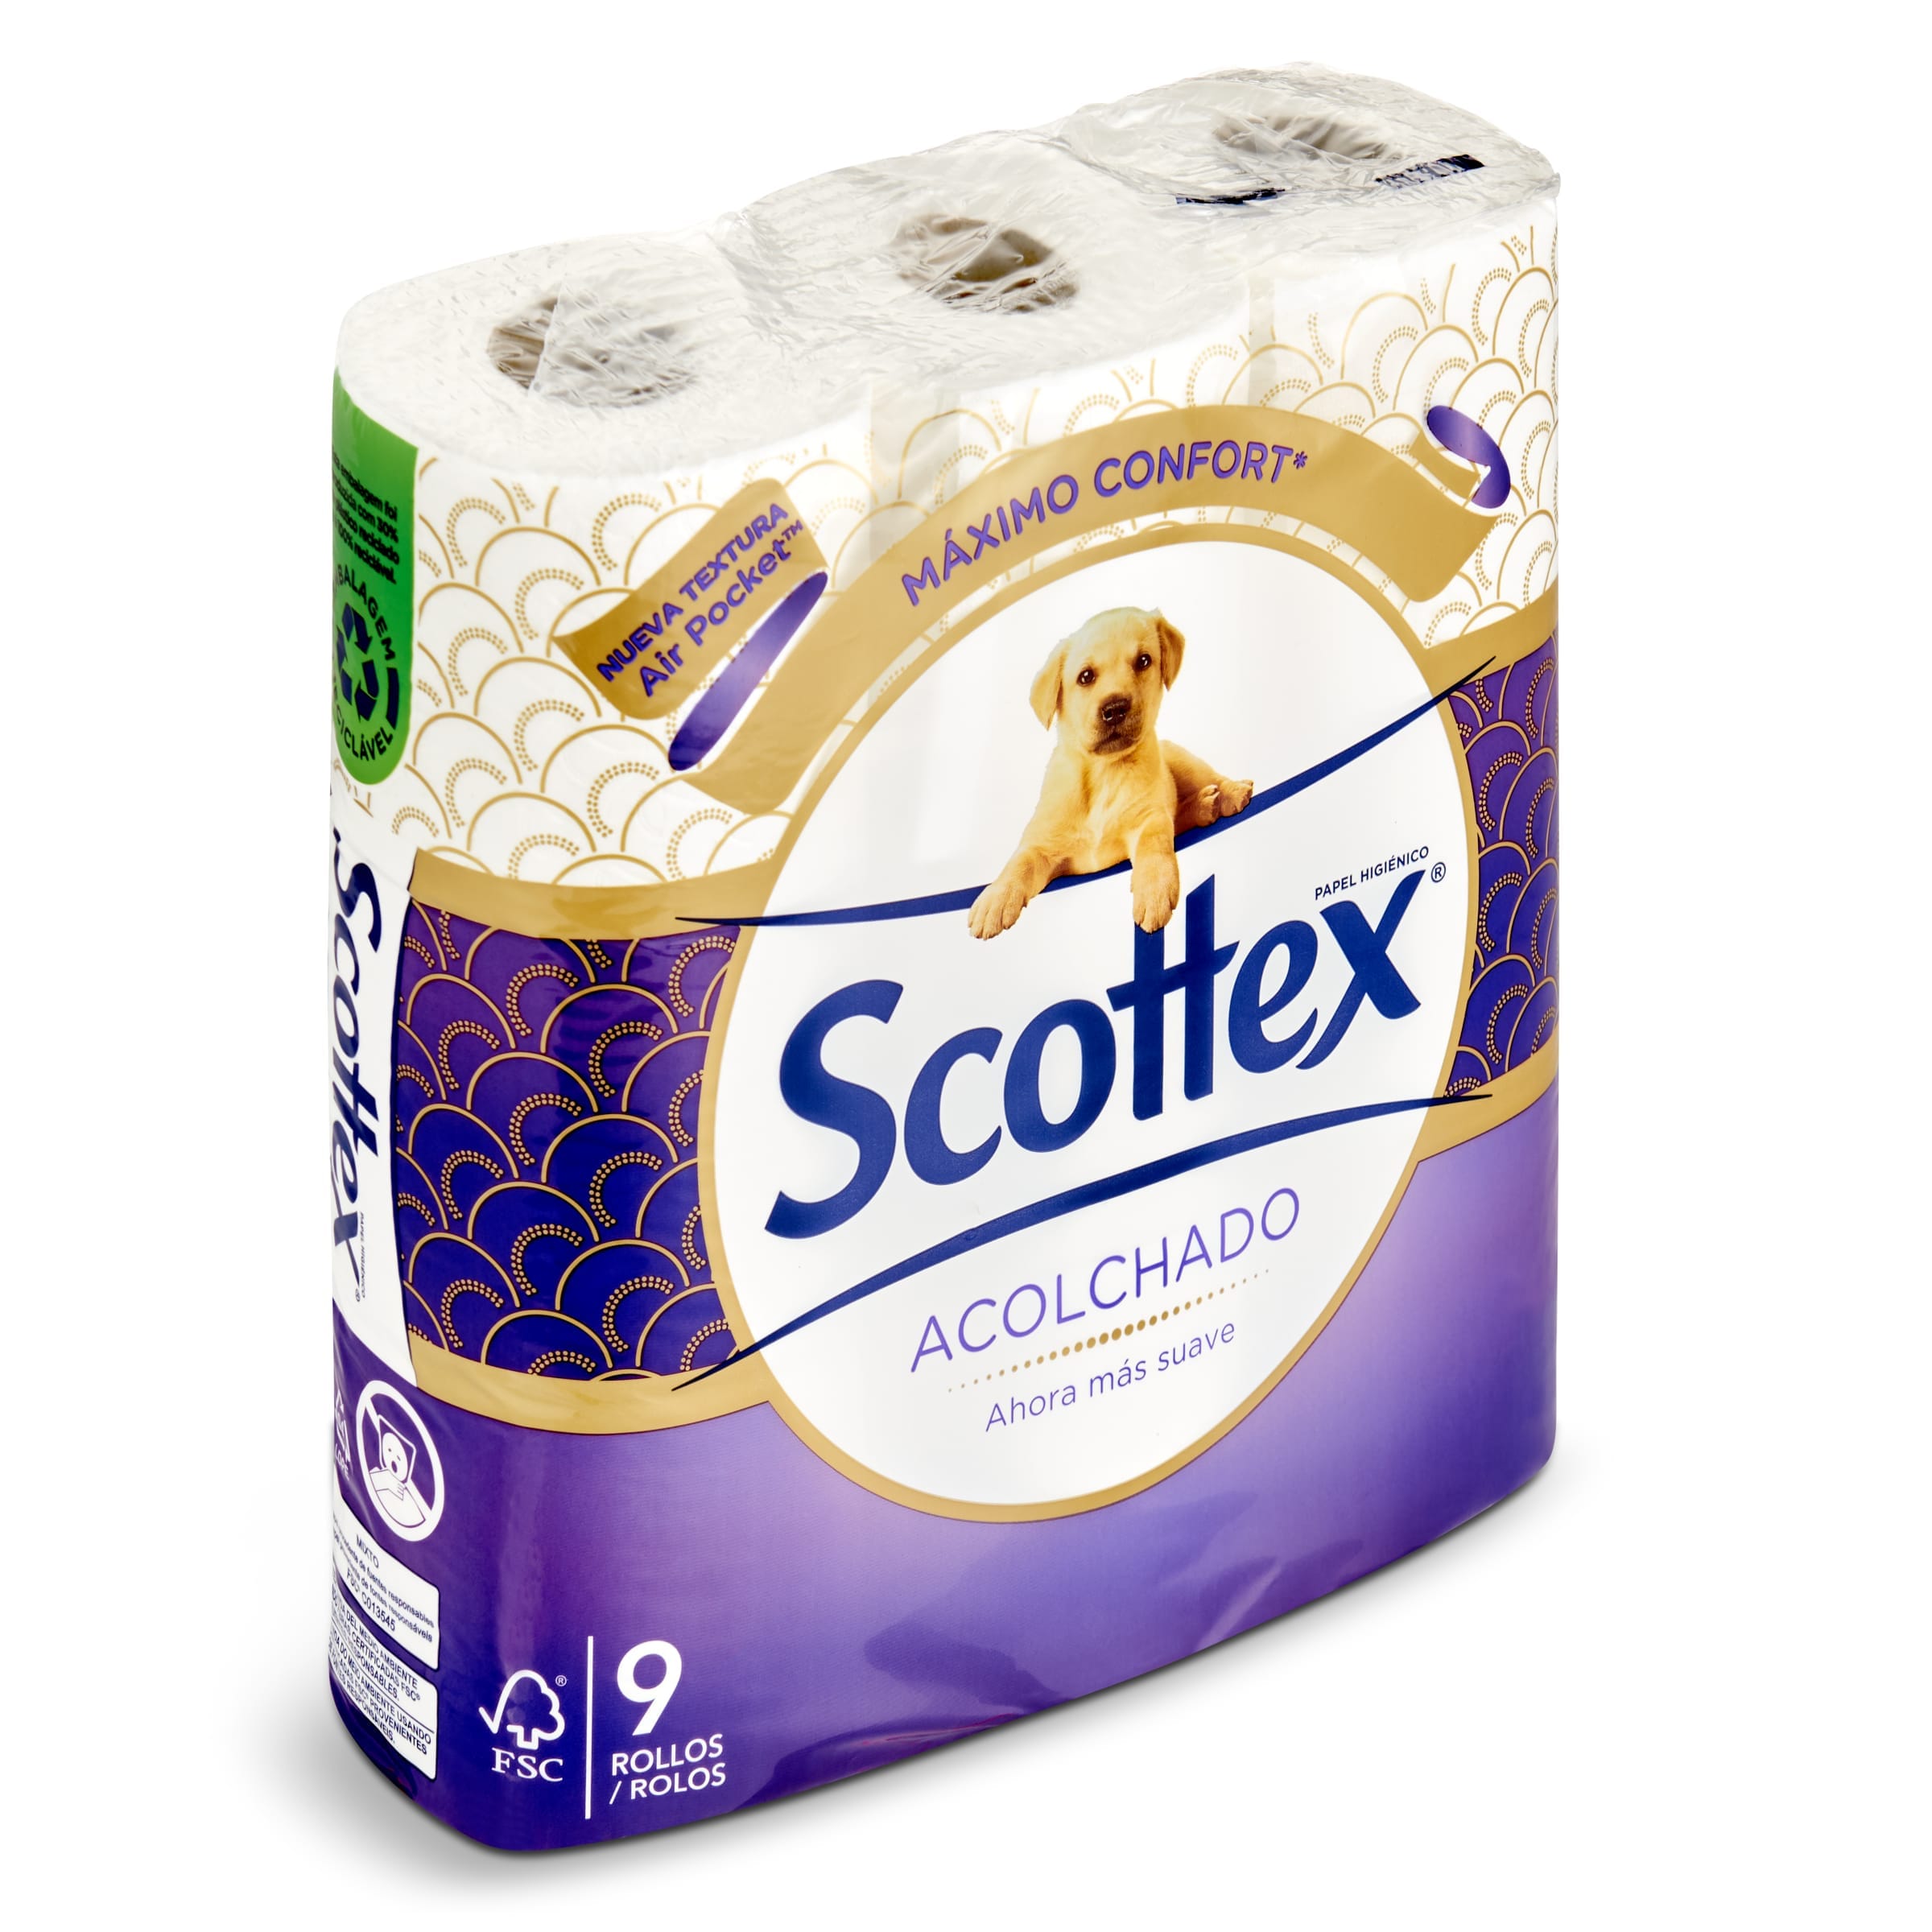 Papel higiénico acolchado 3 capas Scottex bolsa 9 unidades - Supermercados  DIA